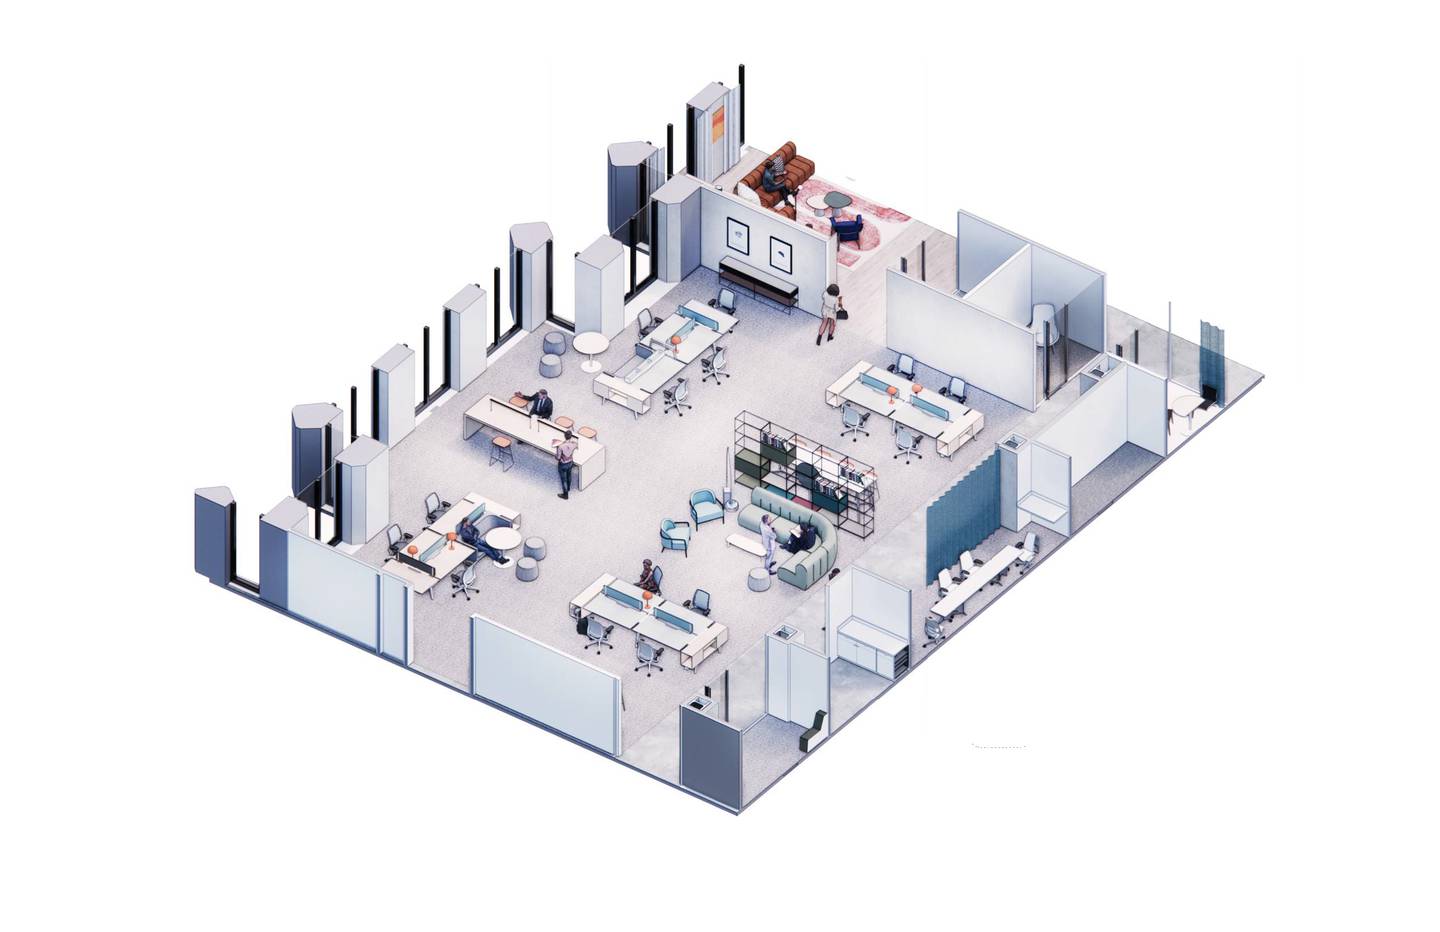 内曼·马库斯(Neiman Marcus)在达拉斯的新“开放概念”工作空间的渲染图。